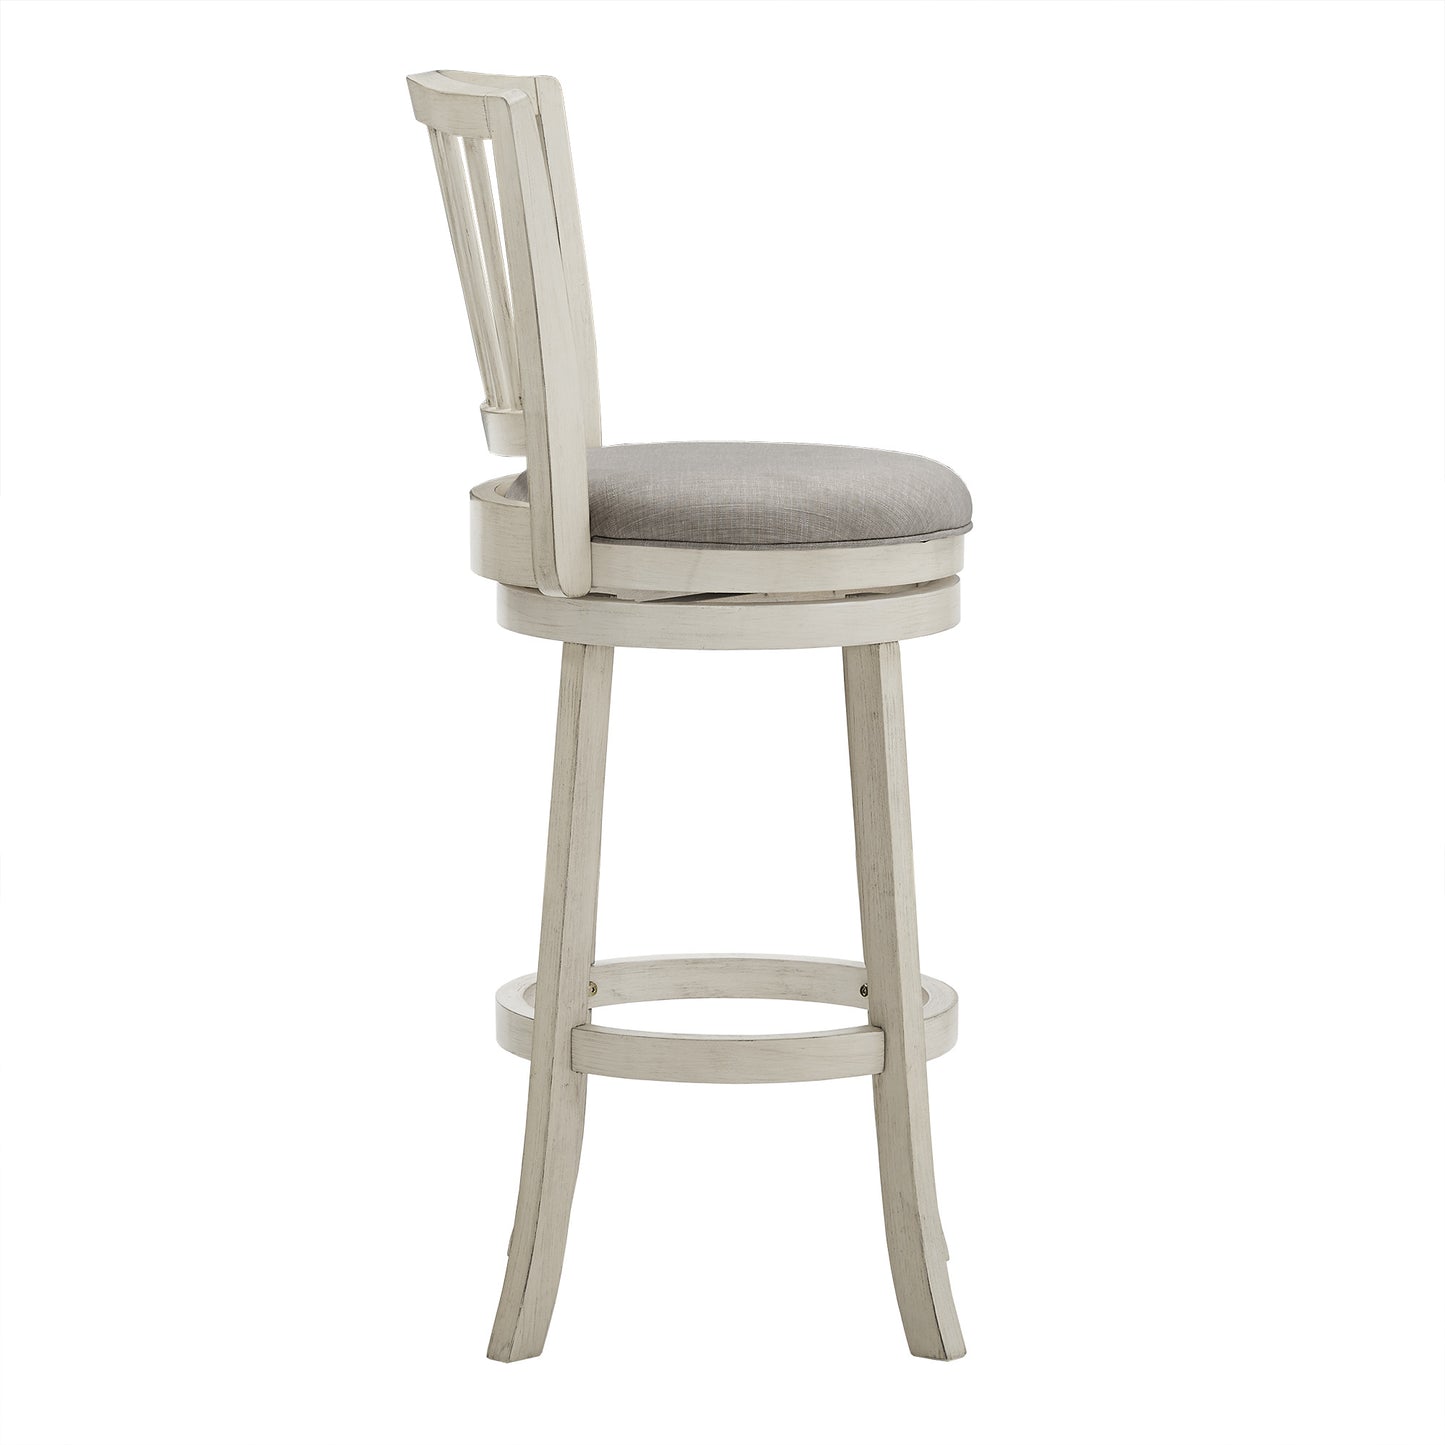 Slat Back Swivel Chair - 29" Bar Height, Antique White Finish, Grey Linen